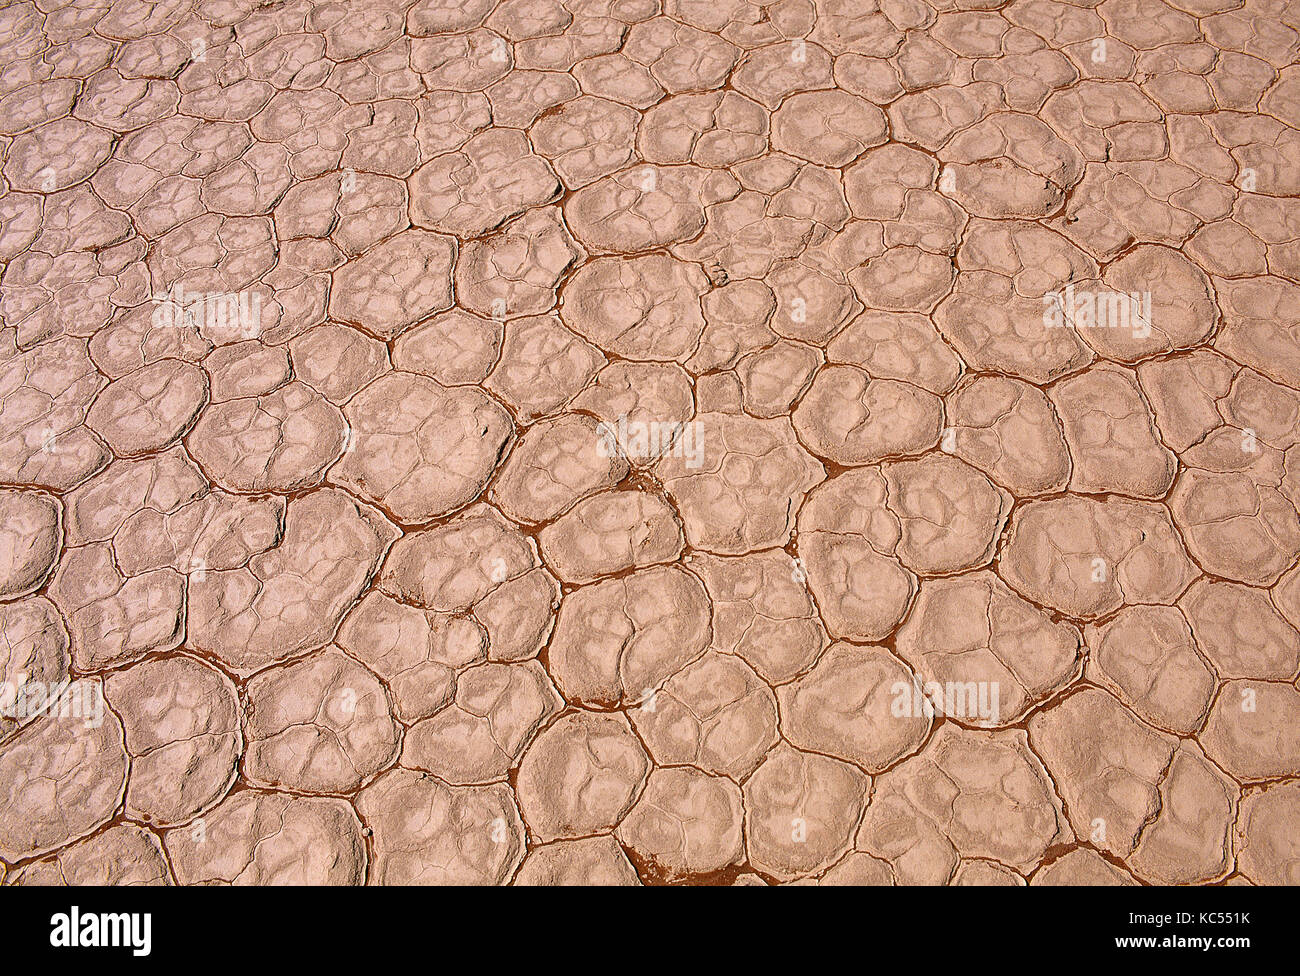 La NAMIBIE. deadvlei. paysage aride de la terre craquelée. Banque D'Images